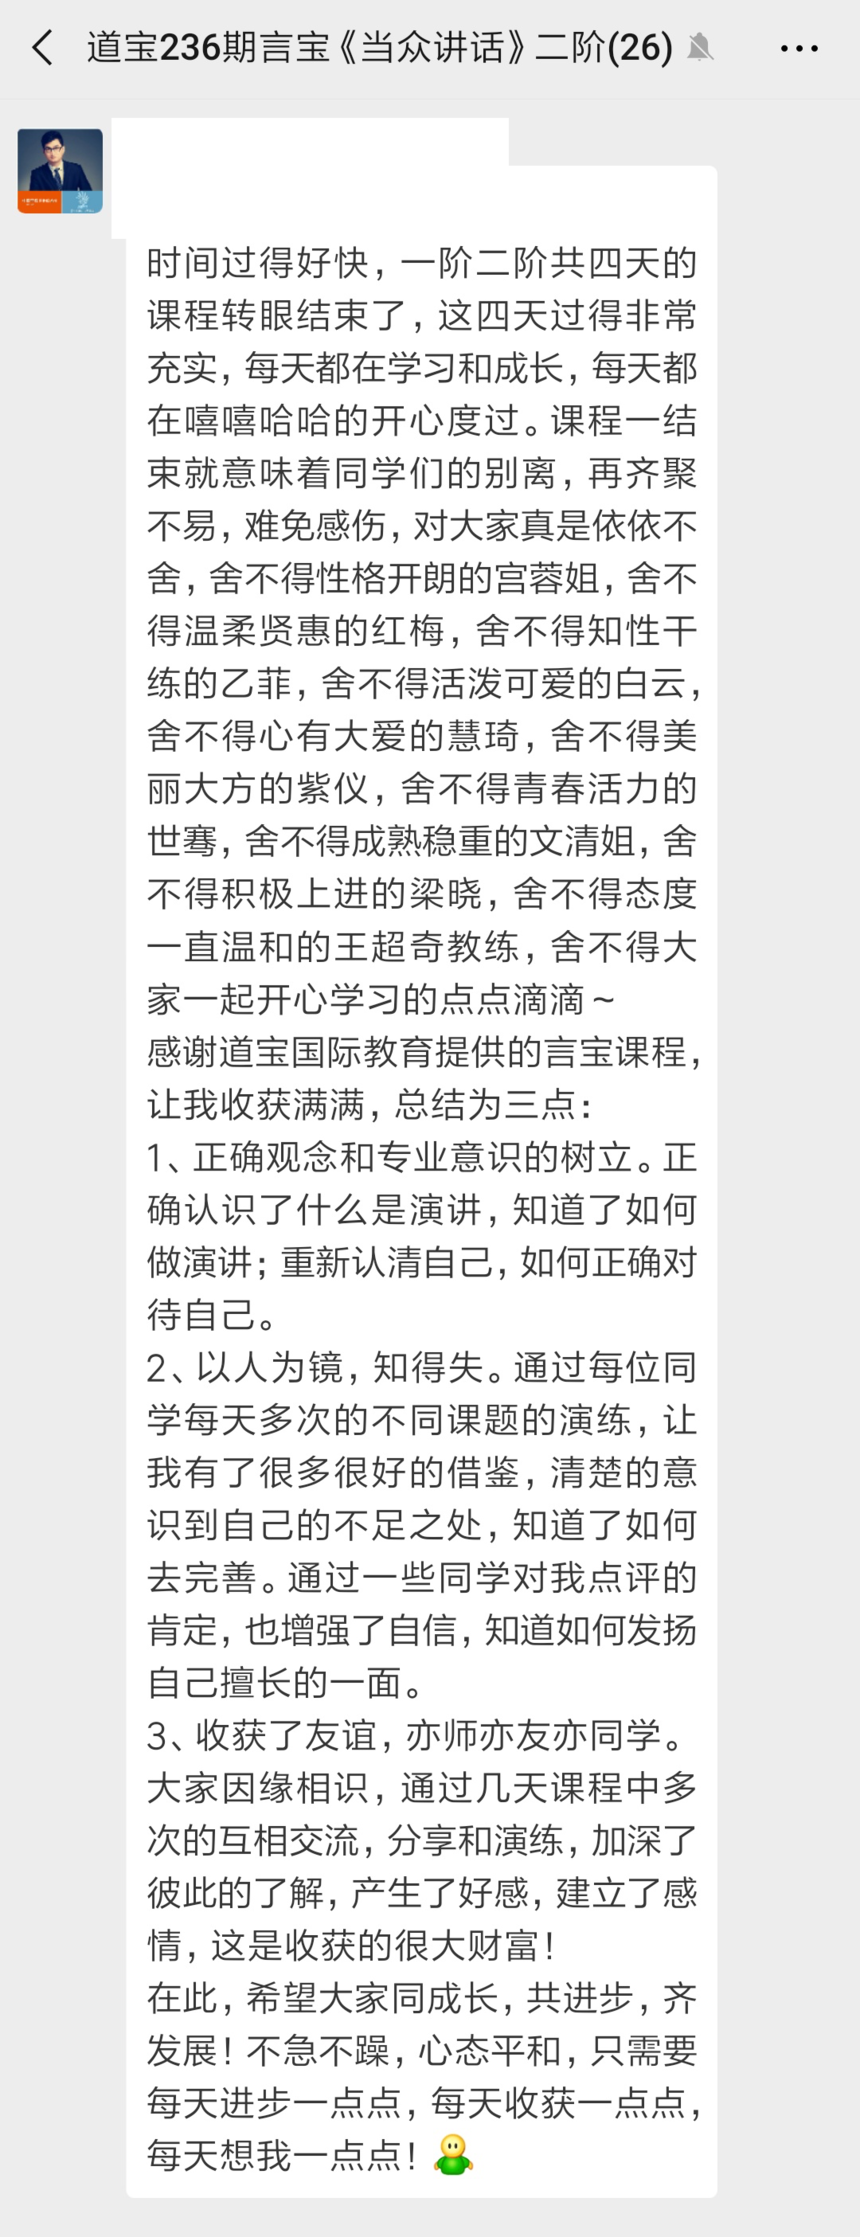 Screenshot_2019-05-22-14-40-33-164_com.tencent.mm.png